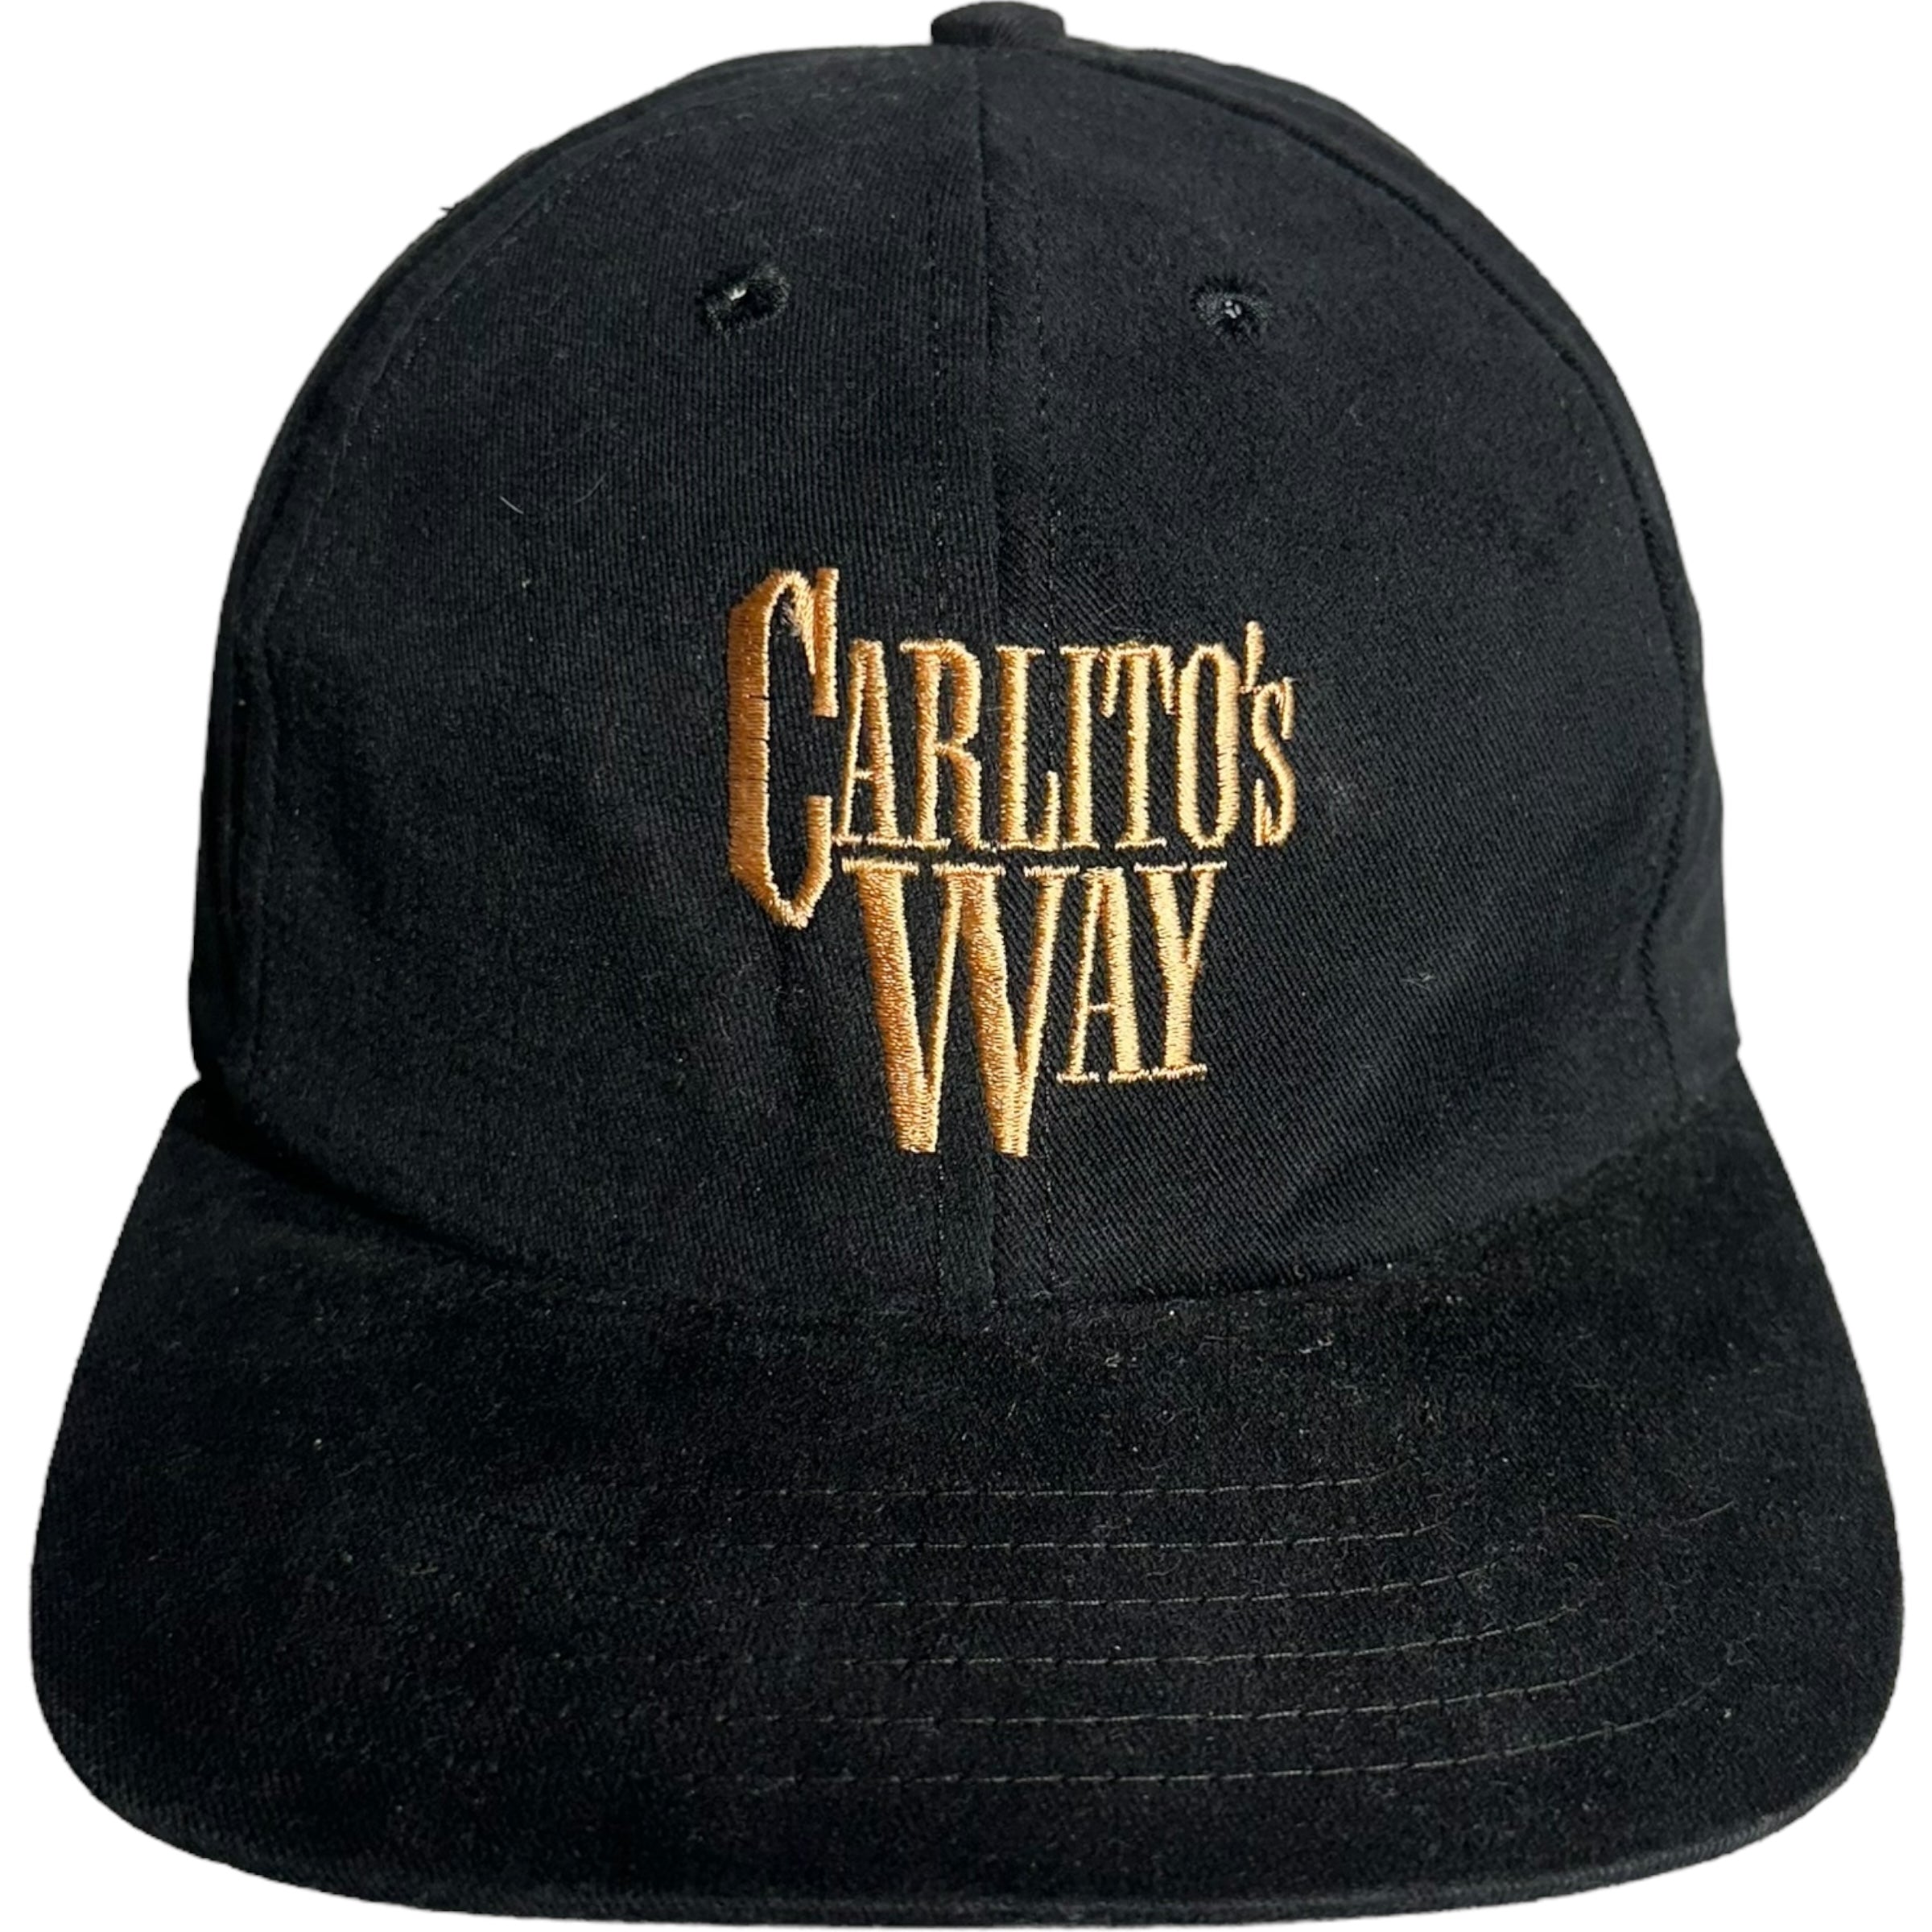 Vintage Carlitos Way Movie Snapback Hat